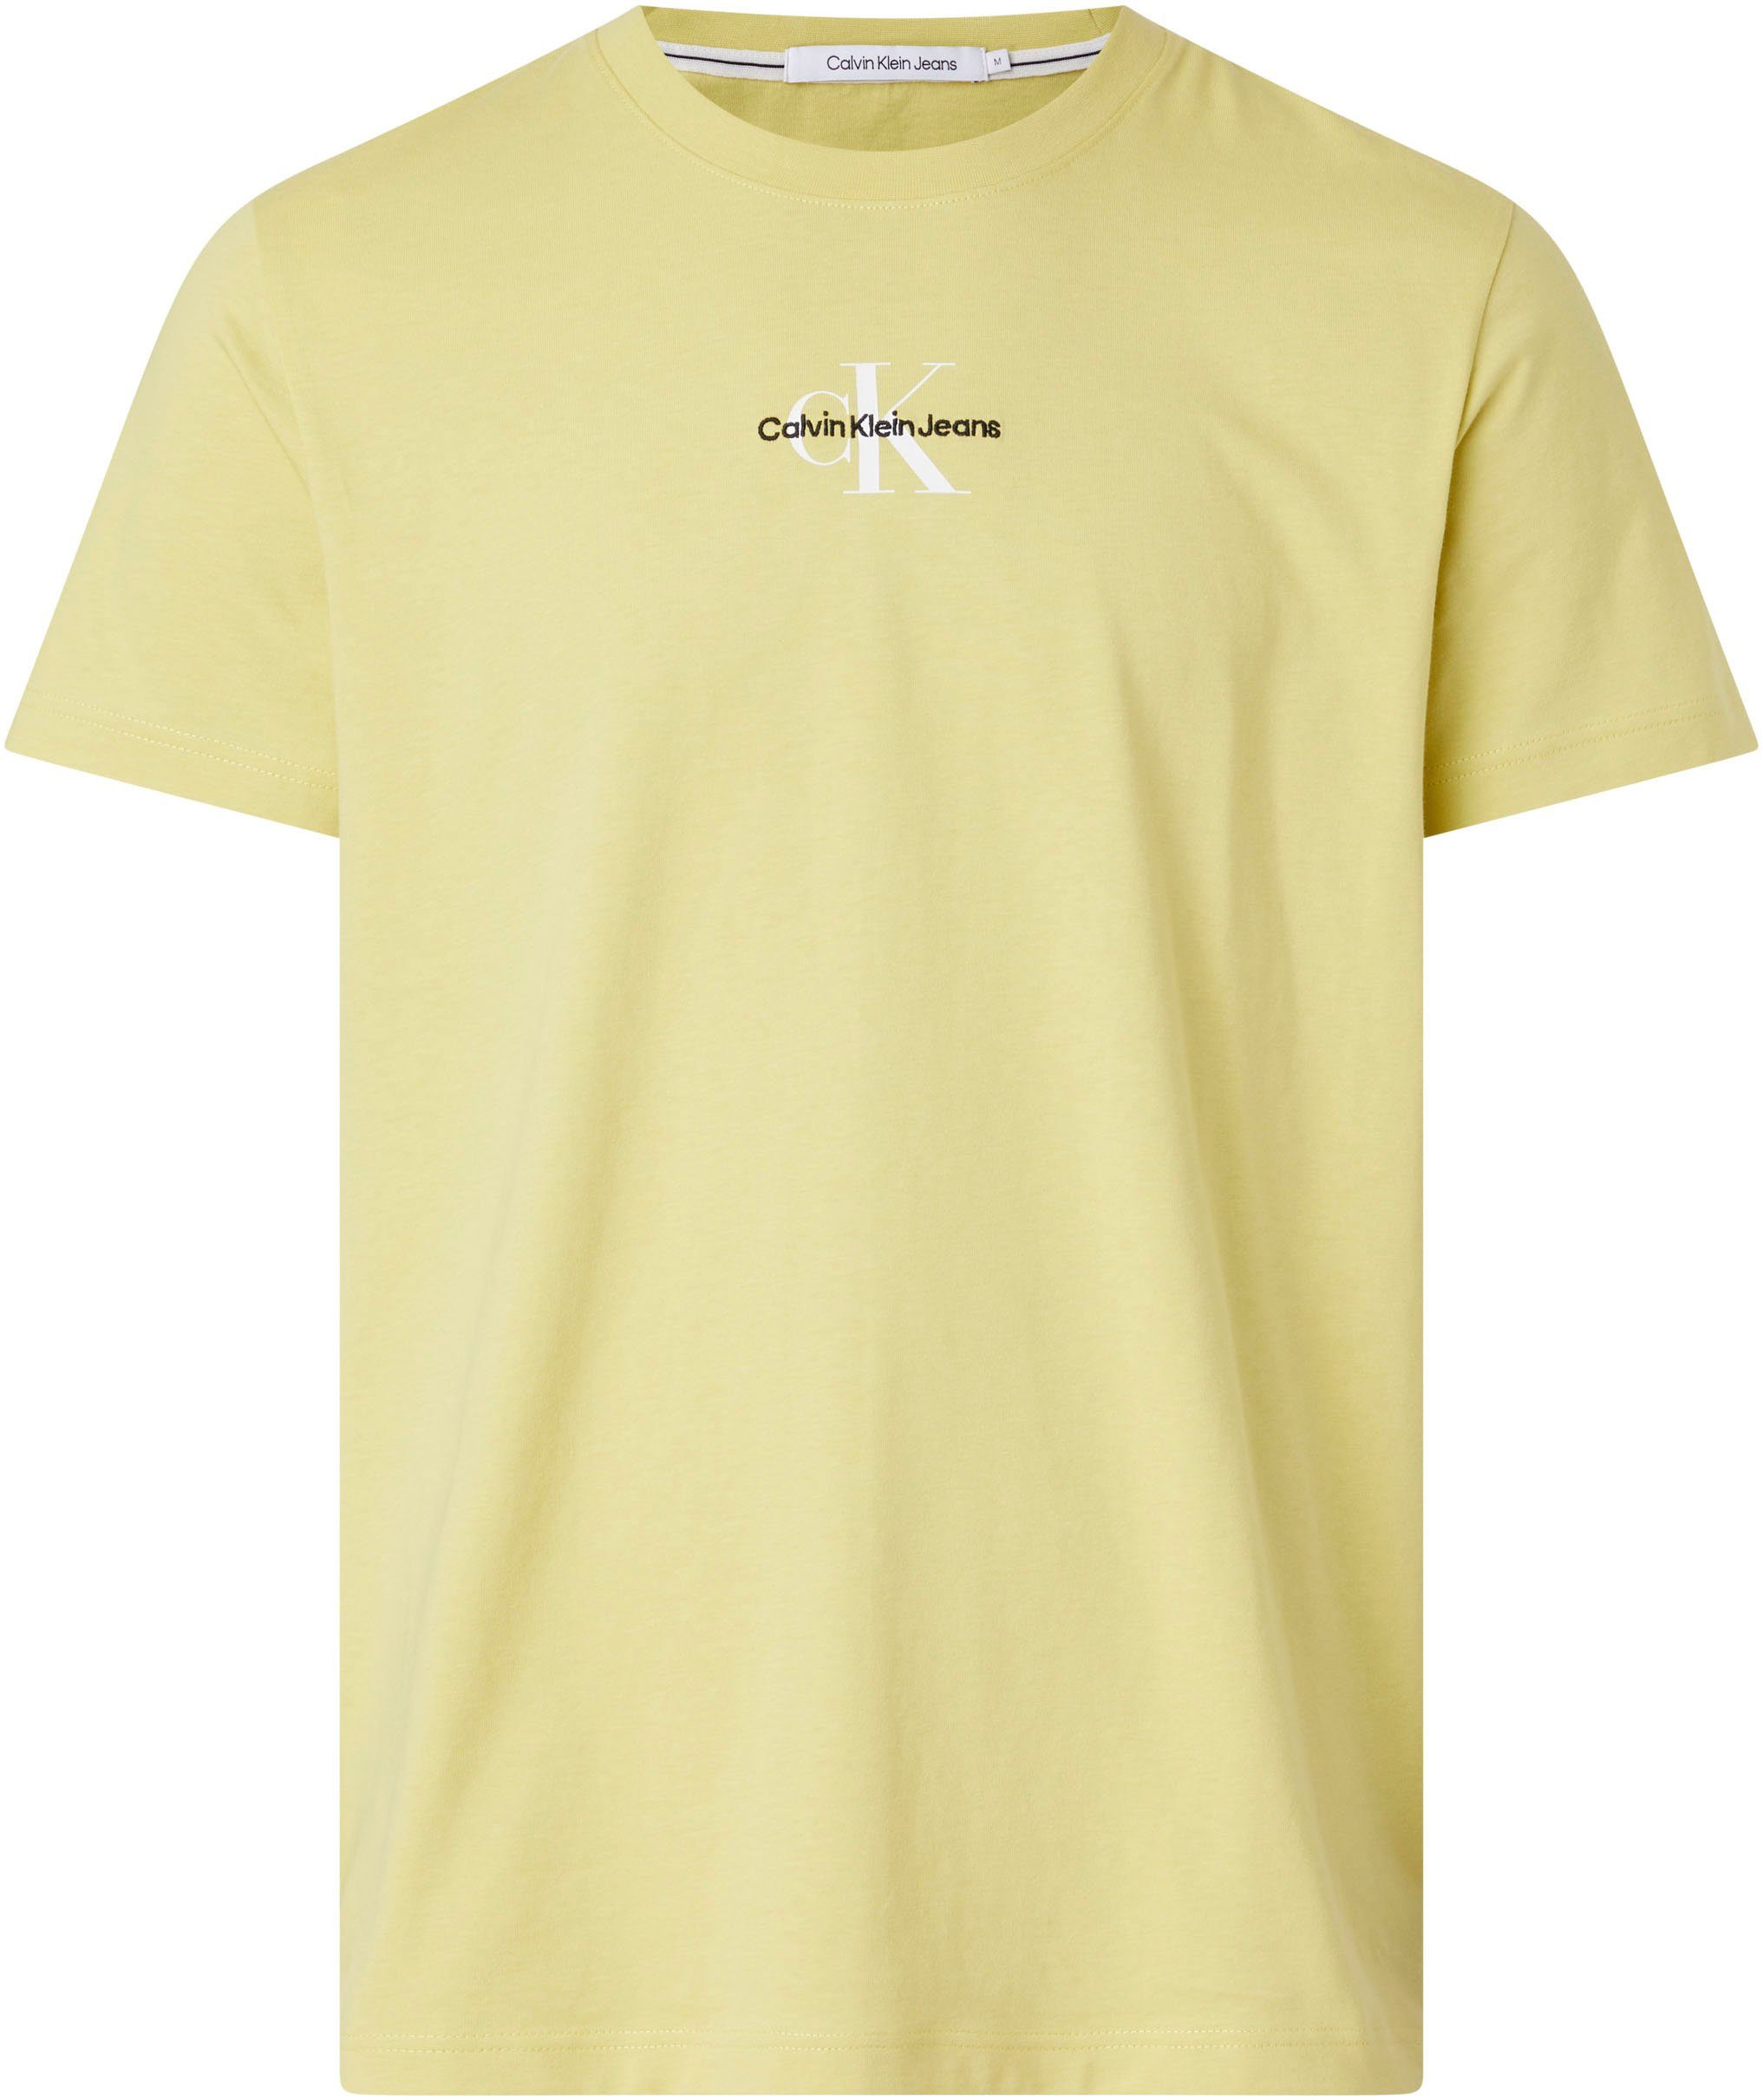 Sand Yellow T-Shirt REGULAR MONOLOGO Jeans Logoschriftzug TEE Klein mit Calvin